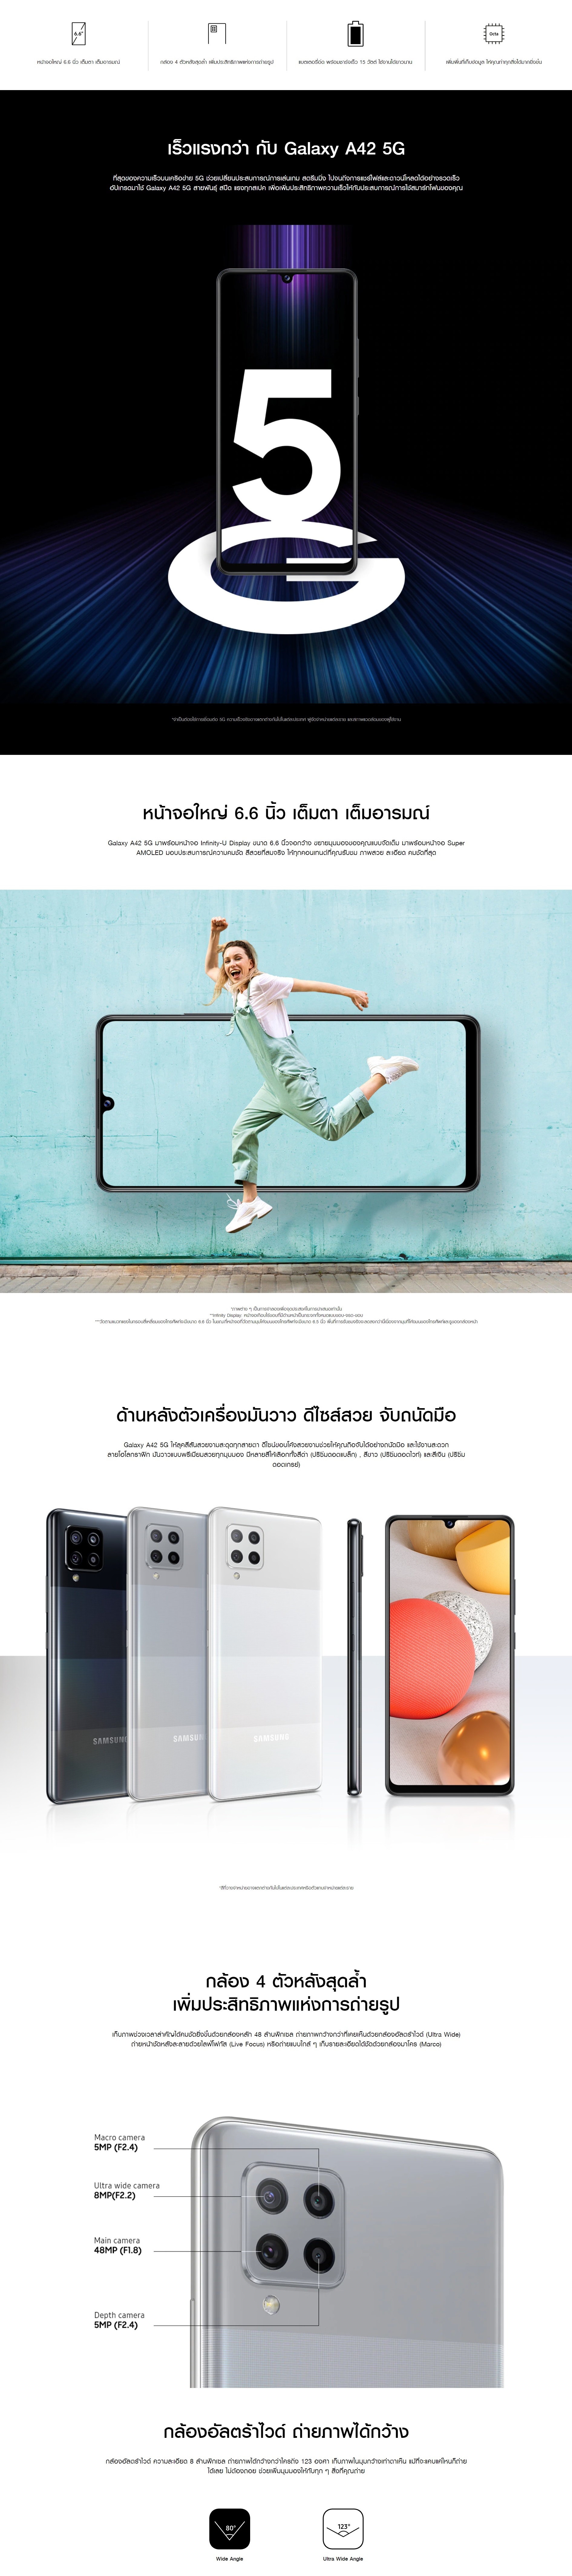 รูปภาพของ Samsung Galaxy A42 5G Ram8/128gb(เครื่องใหม่มือ1,ศูนย์ไทย เคลียสตอค ประกันร้าน 3 เดือน)จอ Super AMOLED กว้าง 6.6 นิ้ว แบตเตอรี่ 5000 mAh มาพร้อมชิปเซ็ต Snapdragon 750G